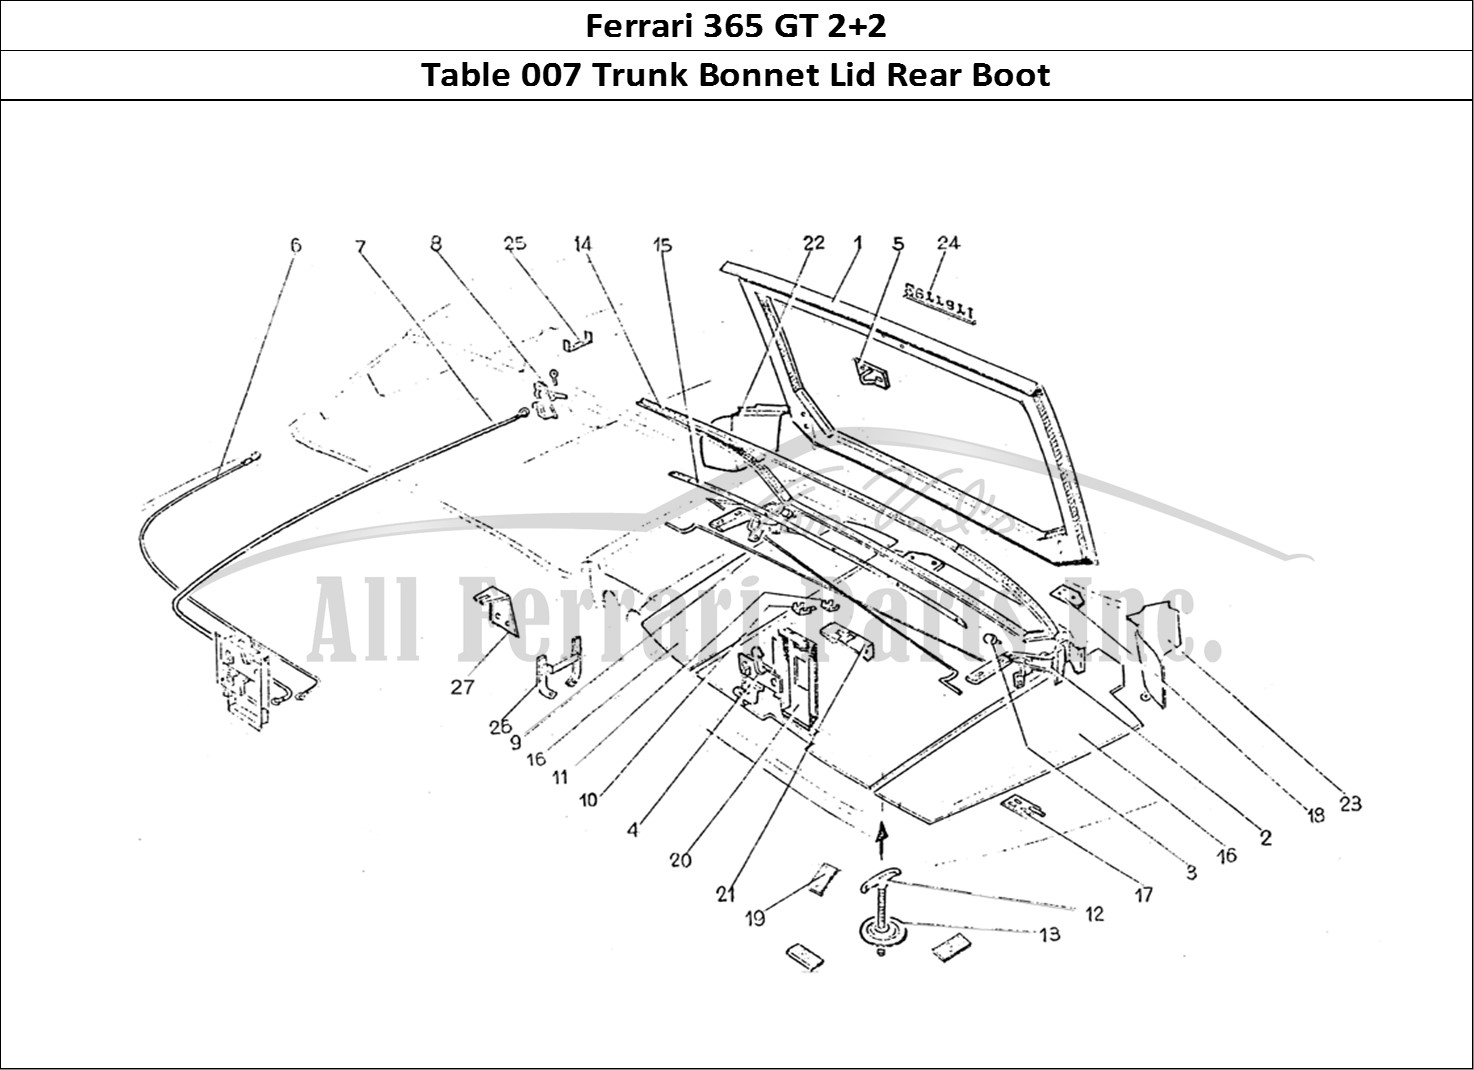 Ferrari Parts Ferrari 365 GT 2+2 (Coachwork) Page 007 Rear Boot lid